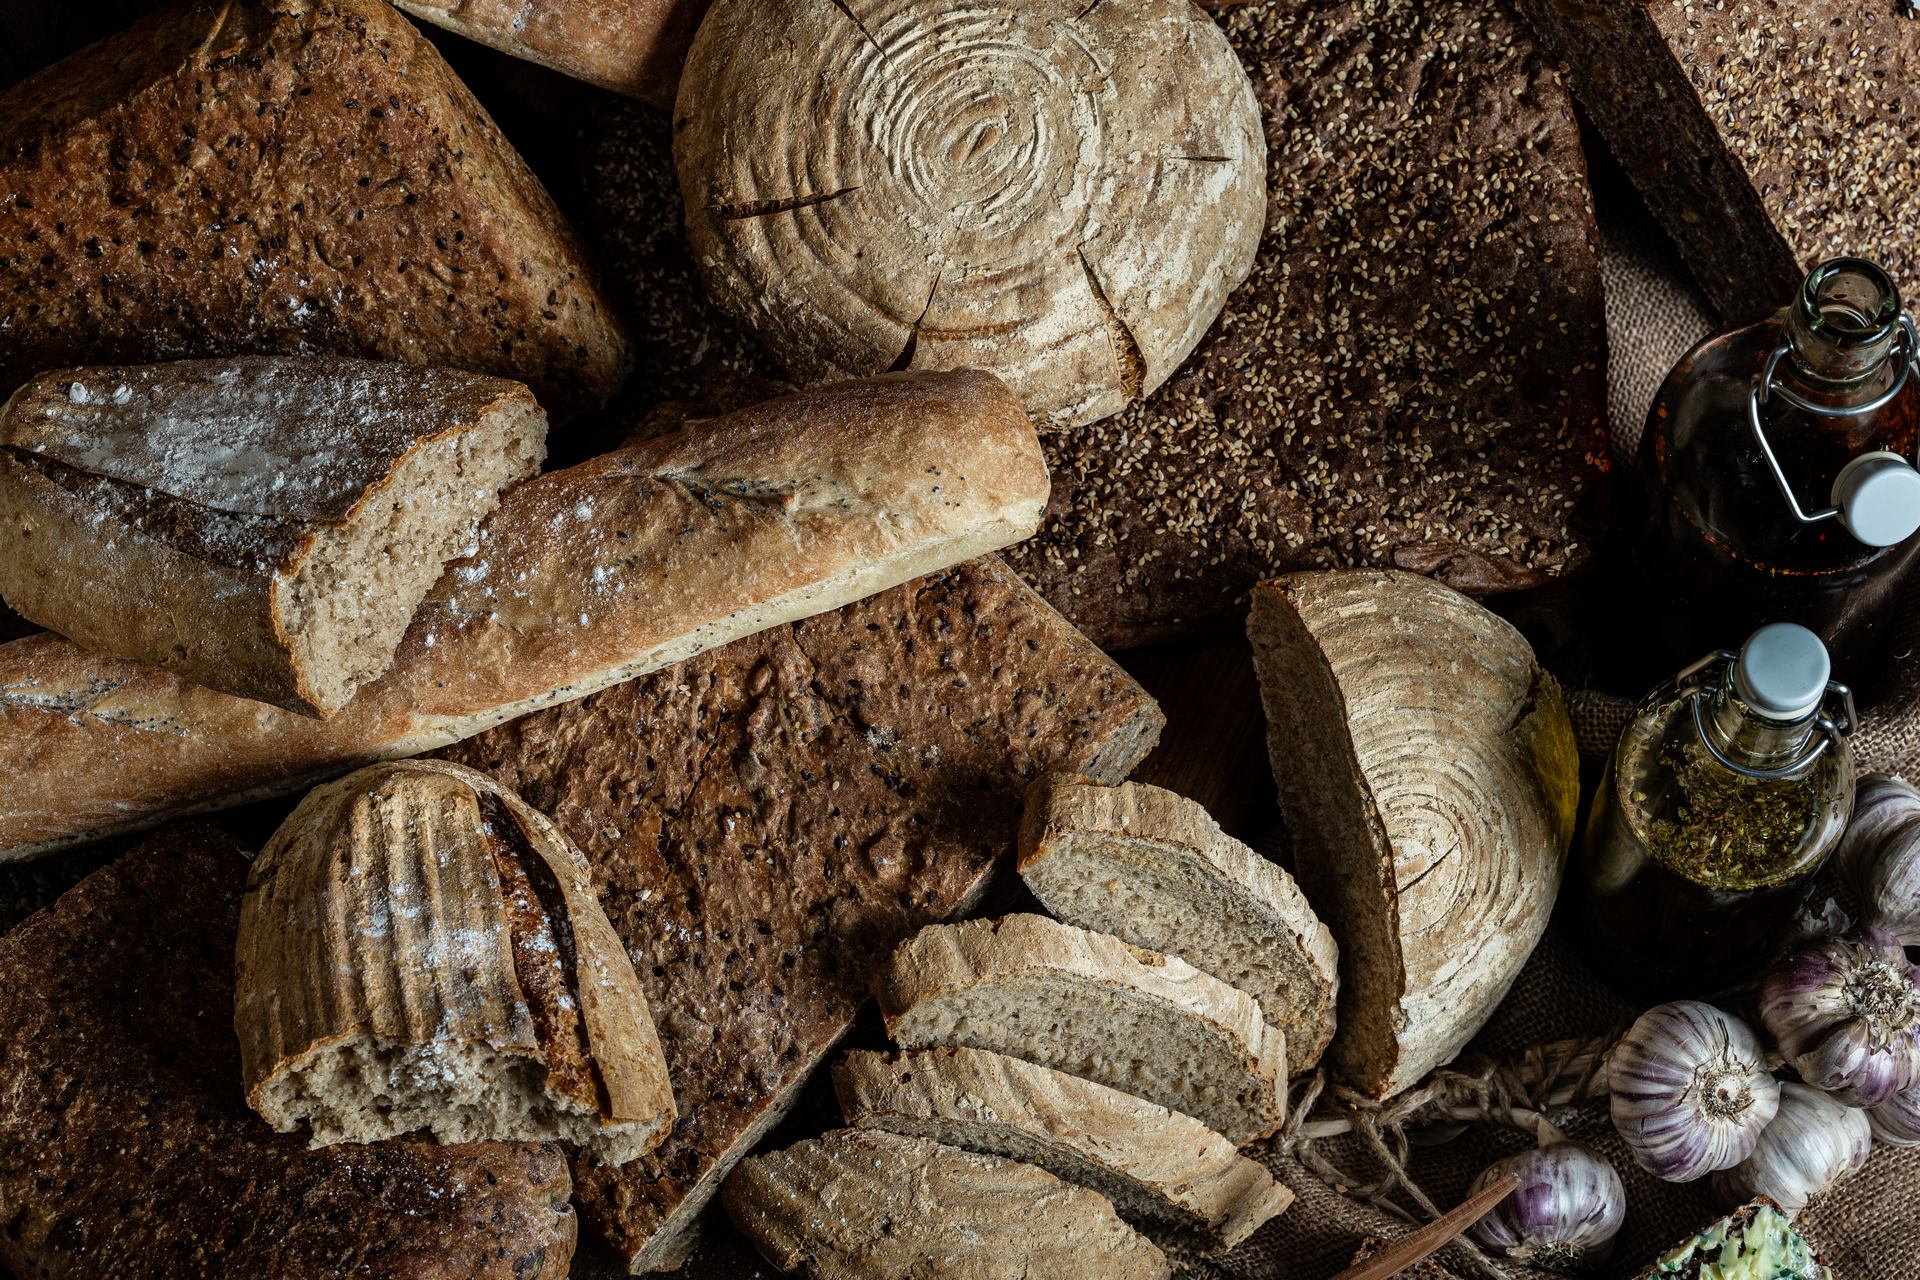 samodzielnie przygotowane pieczywo i chleby pieczone w Dworze Korona Karkonoszy w Sosnówce koło Karpacza